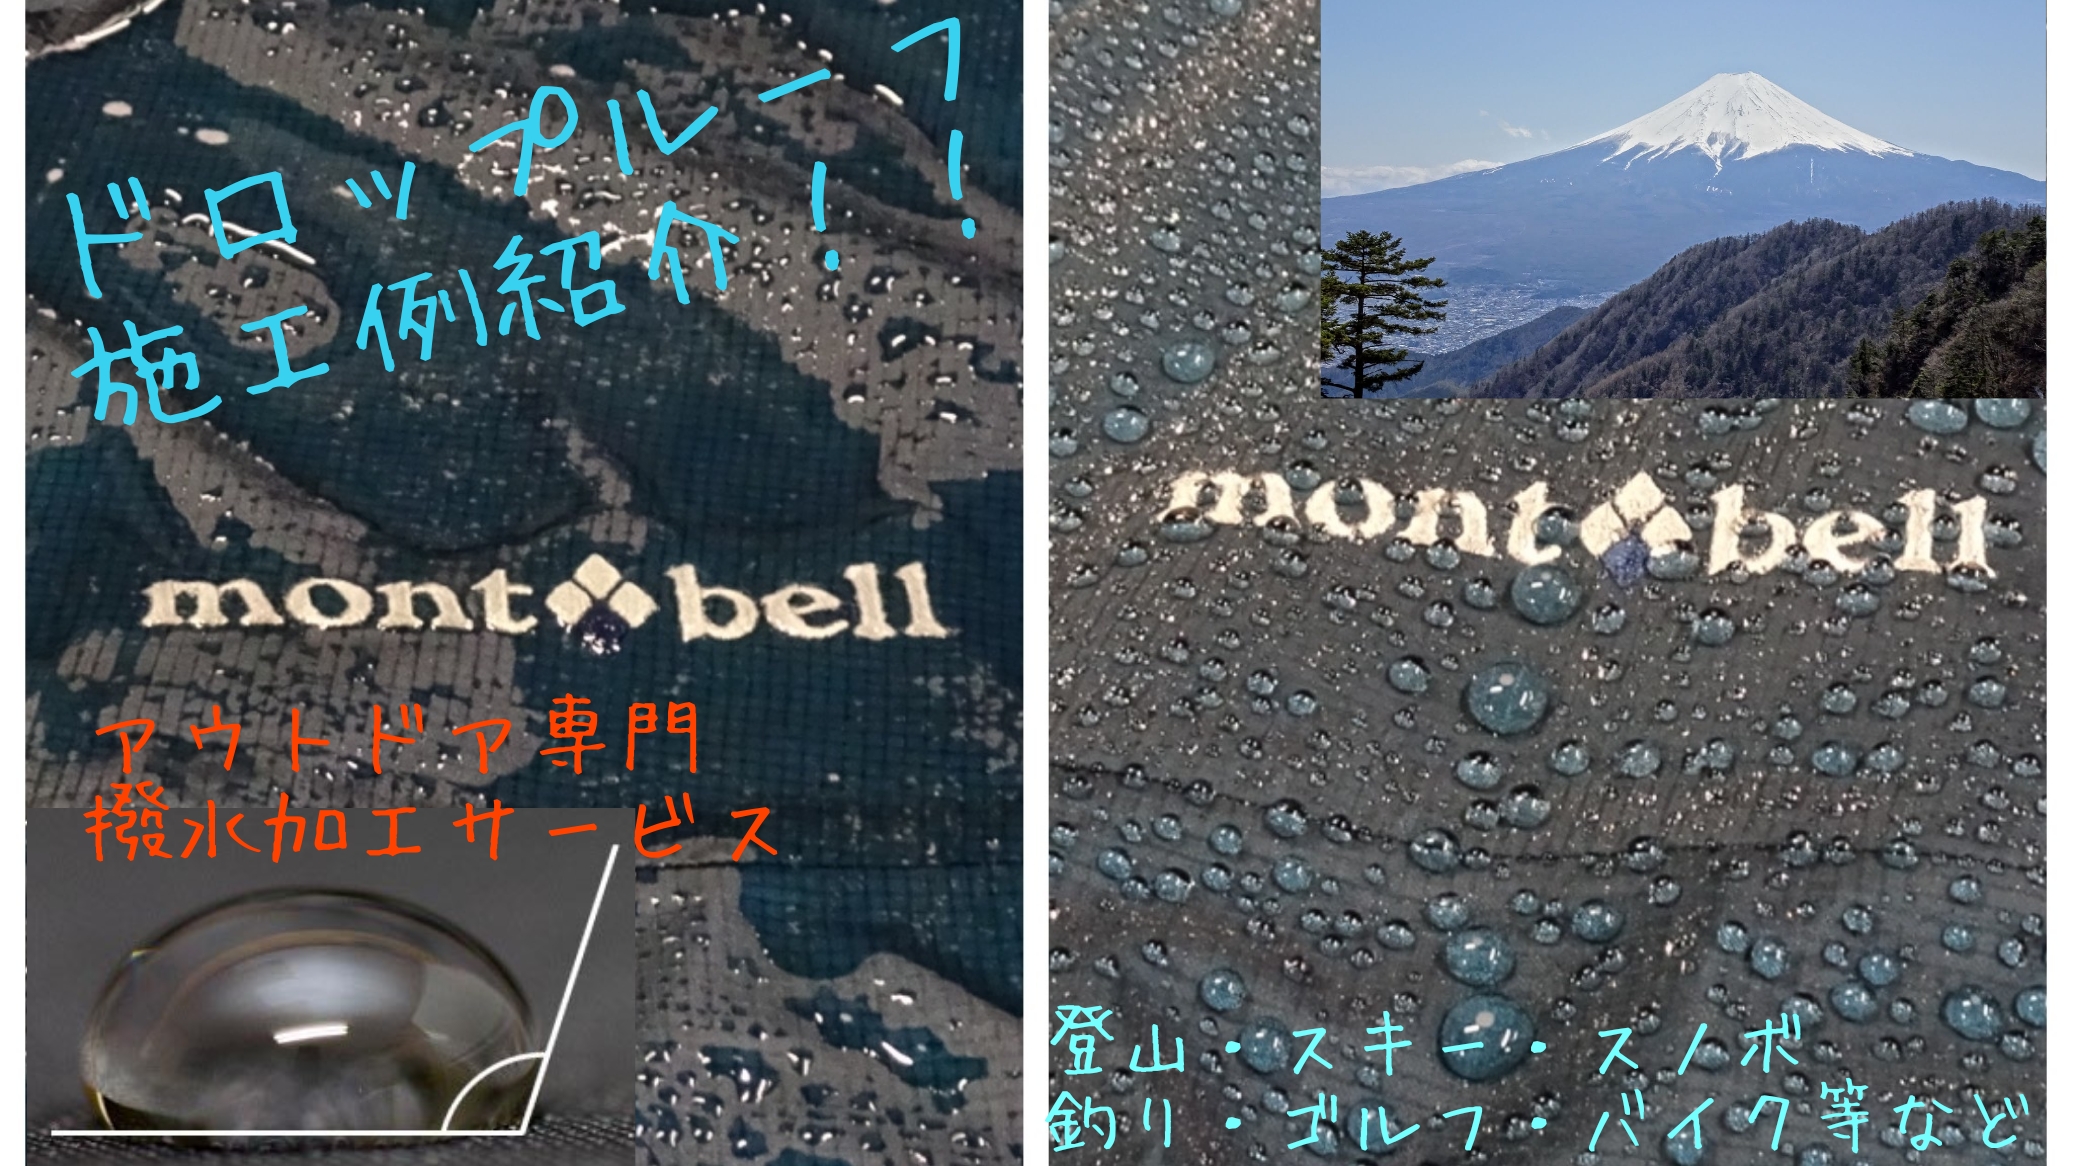 モンベルのゴアテックスウェアストームクルーザーのドロップルーフ施工ビフォーアフターと三つ峠山登山中に見た富士山